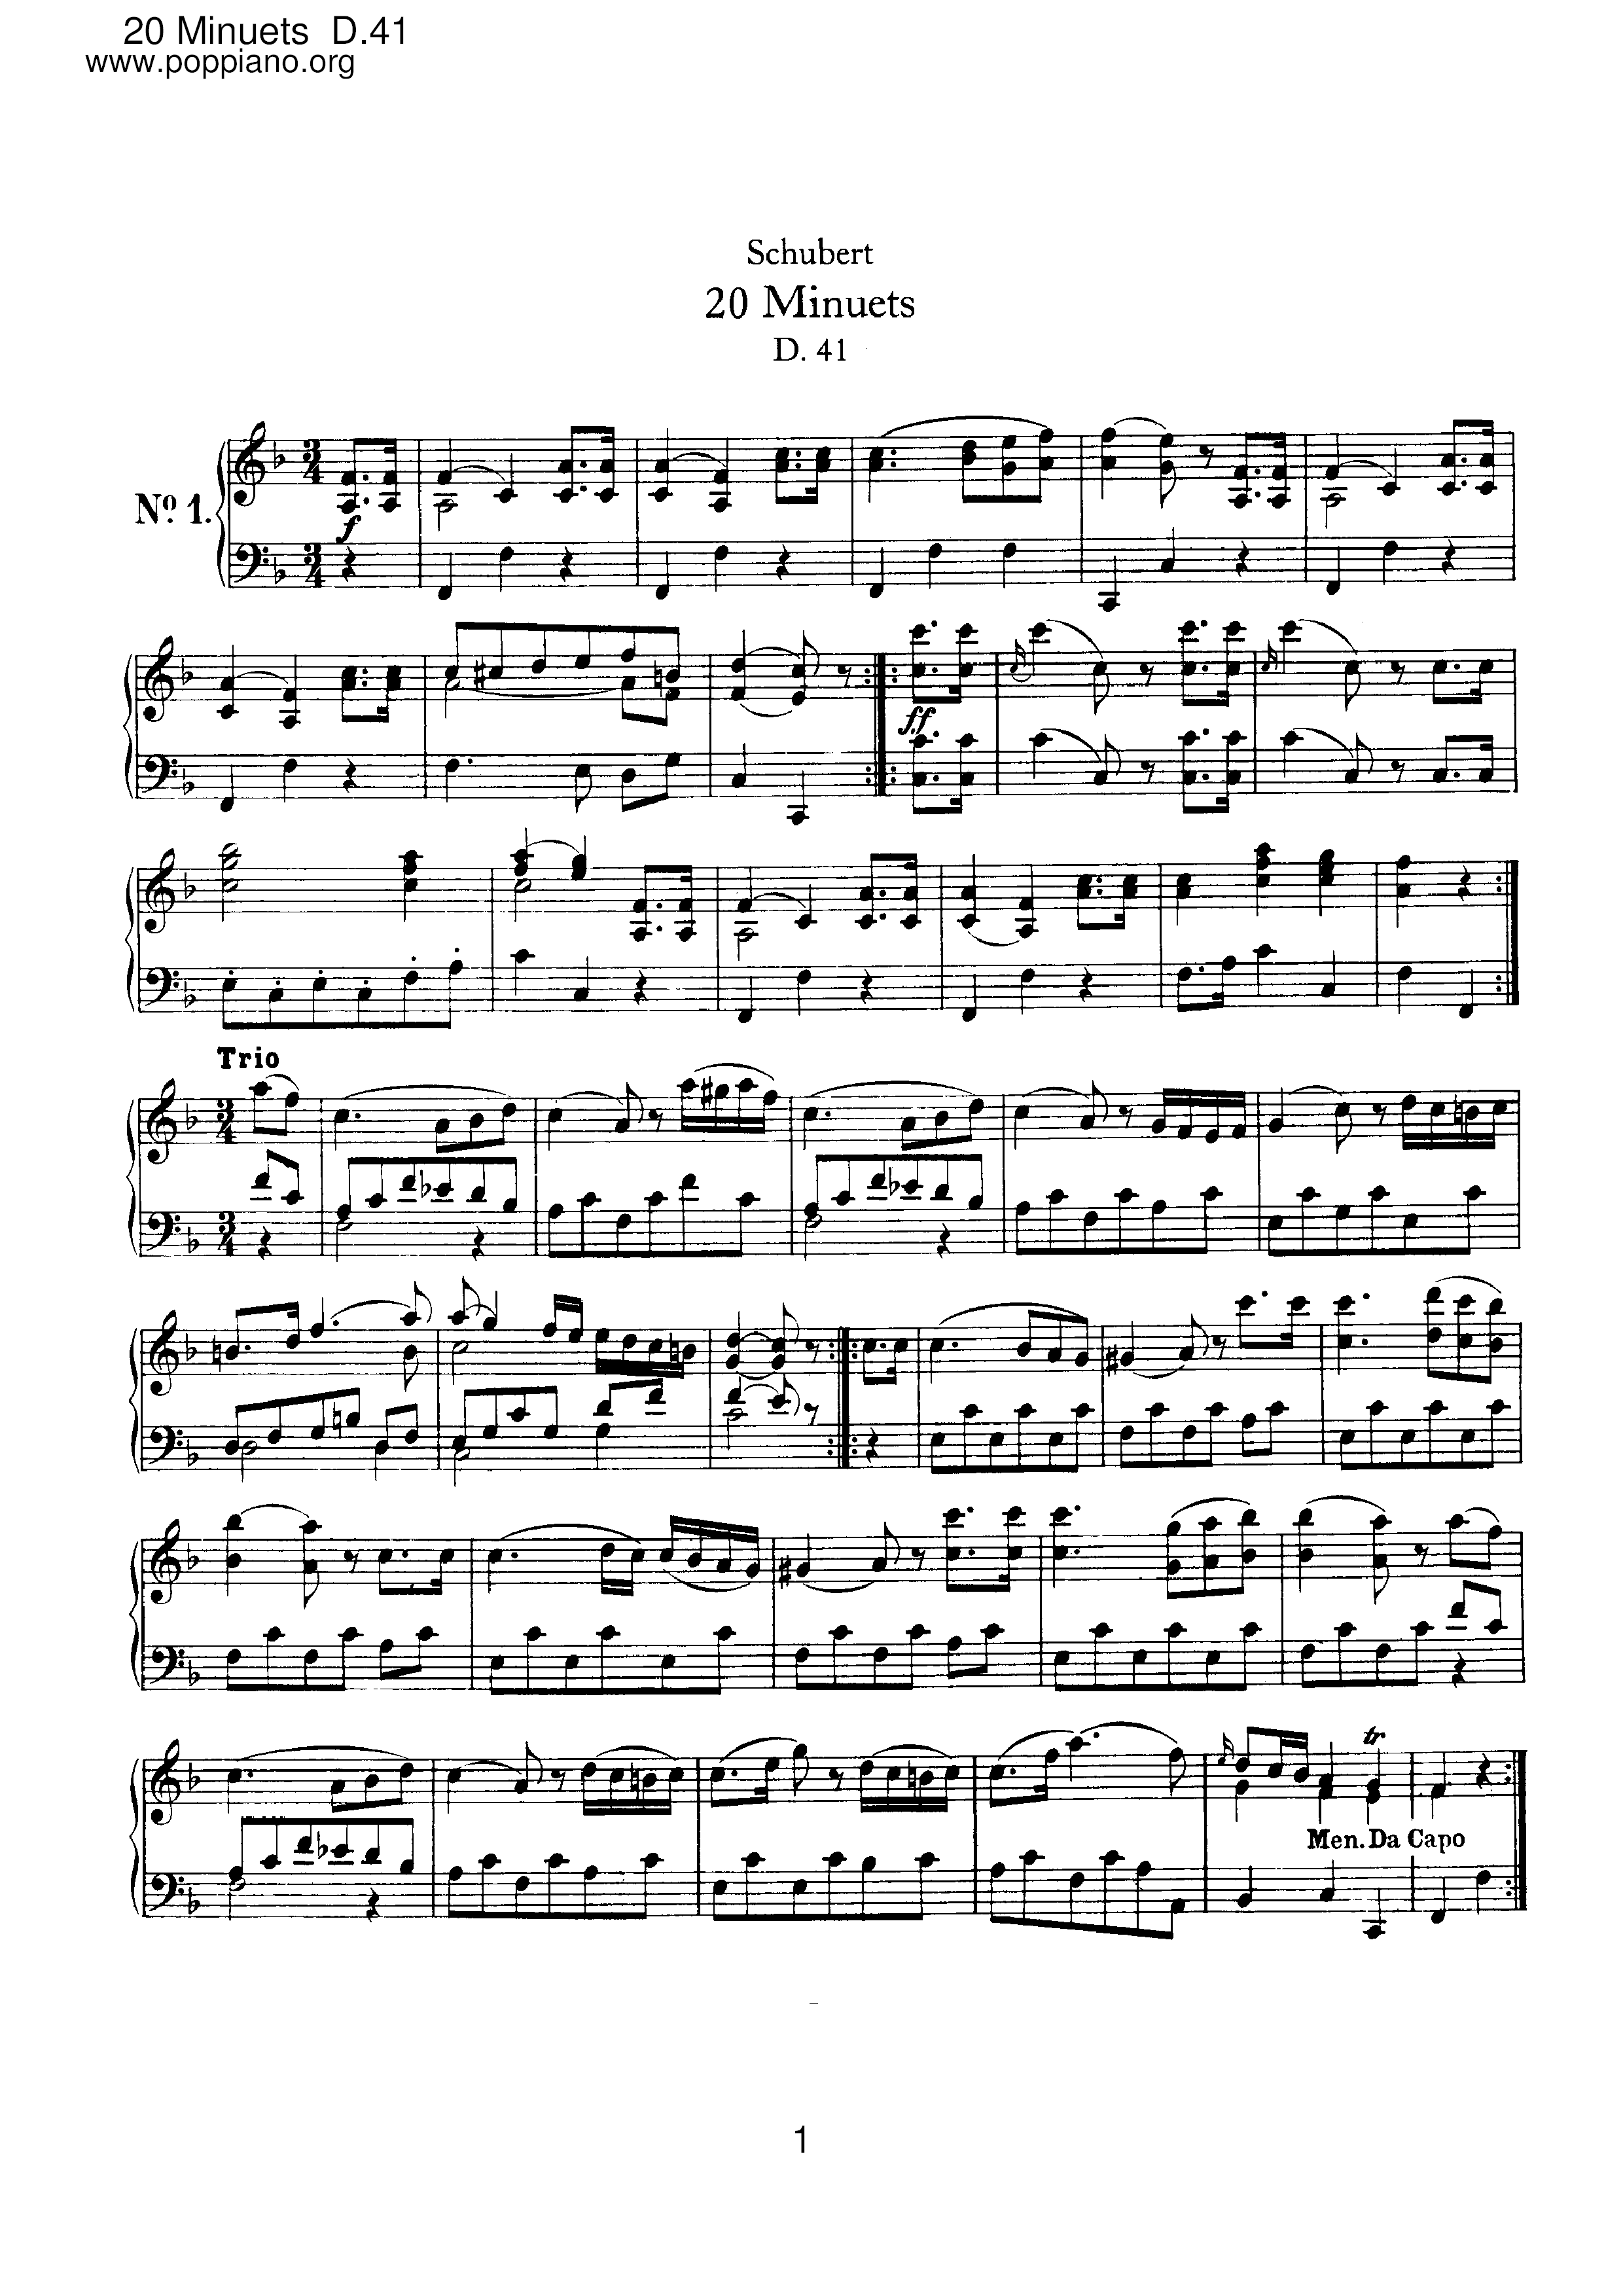 20 Minuets, D.41ピアノ譜